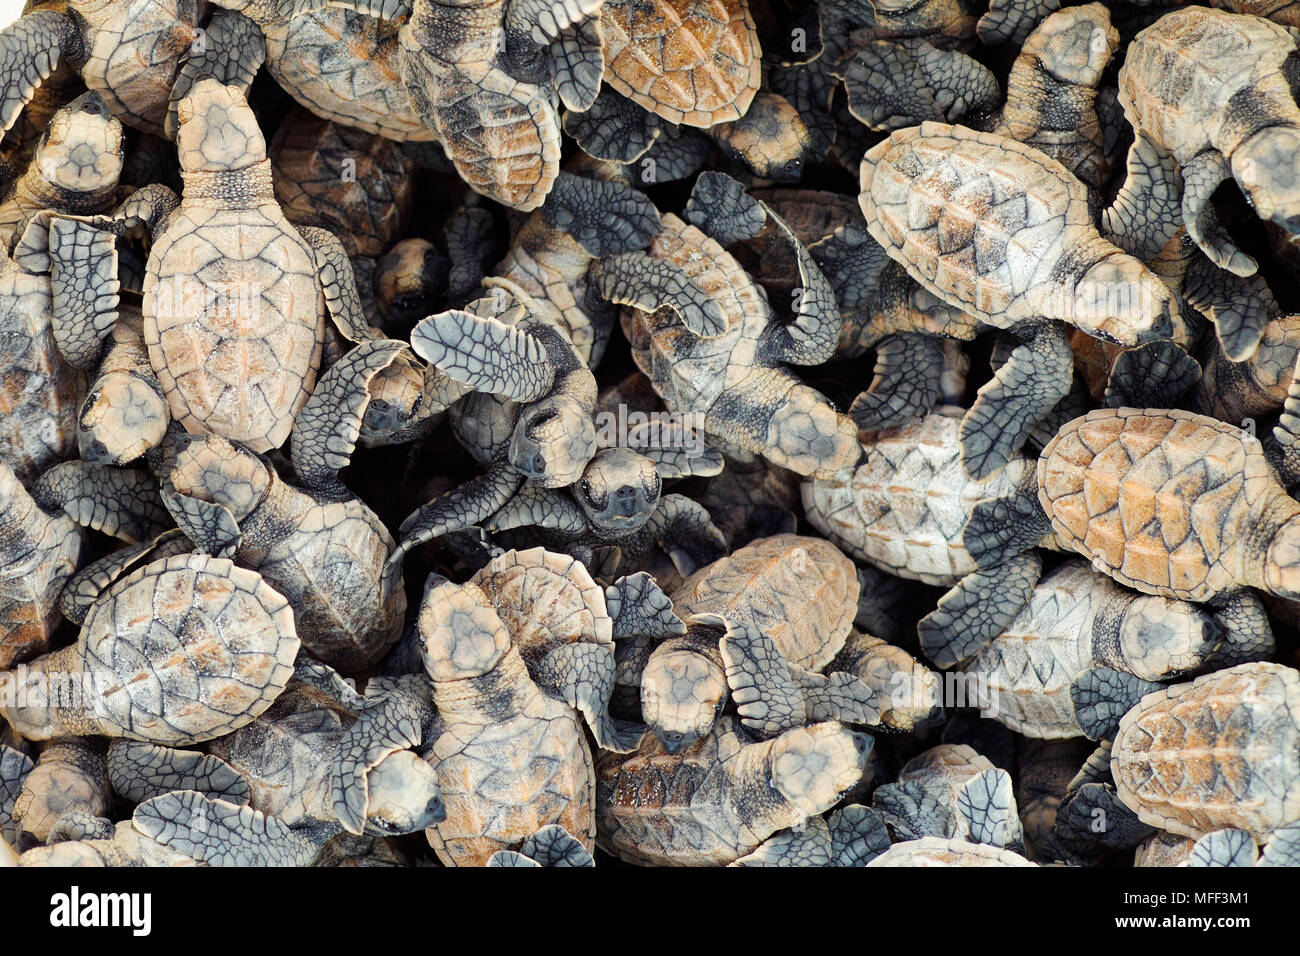 Massa di tartaruga embricata neonati. (Eretmochelys imbricata). Specie in via di estinzione. Cousine Island. Le Seychelles. Dist. tropicale e subtropicale degli oceani Foto Stock